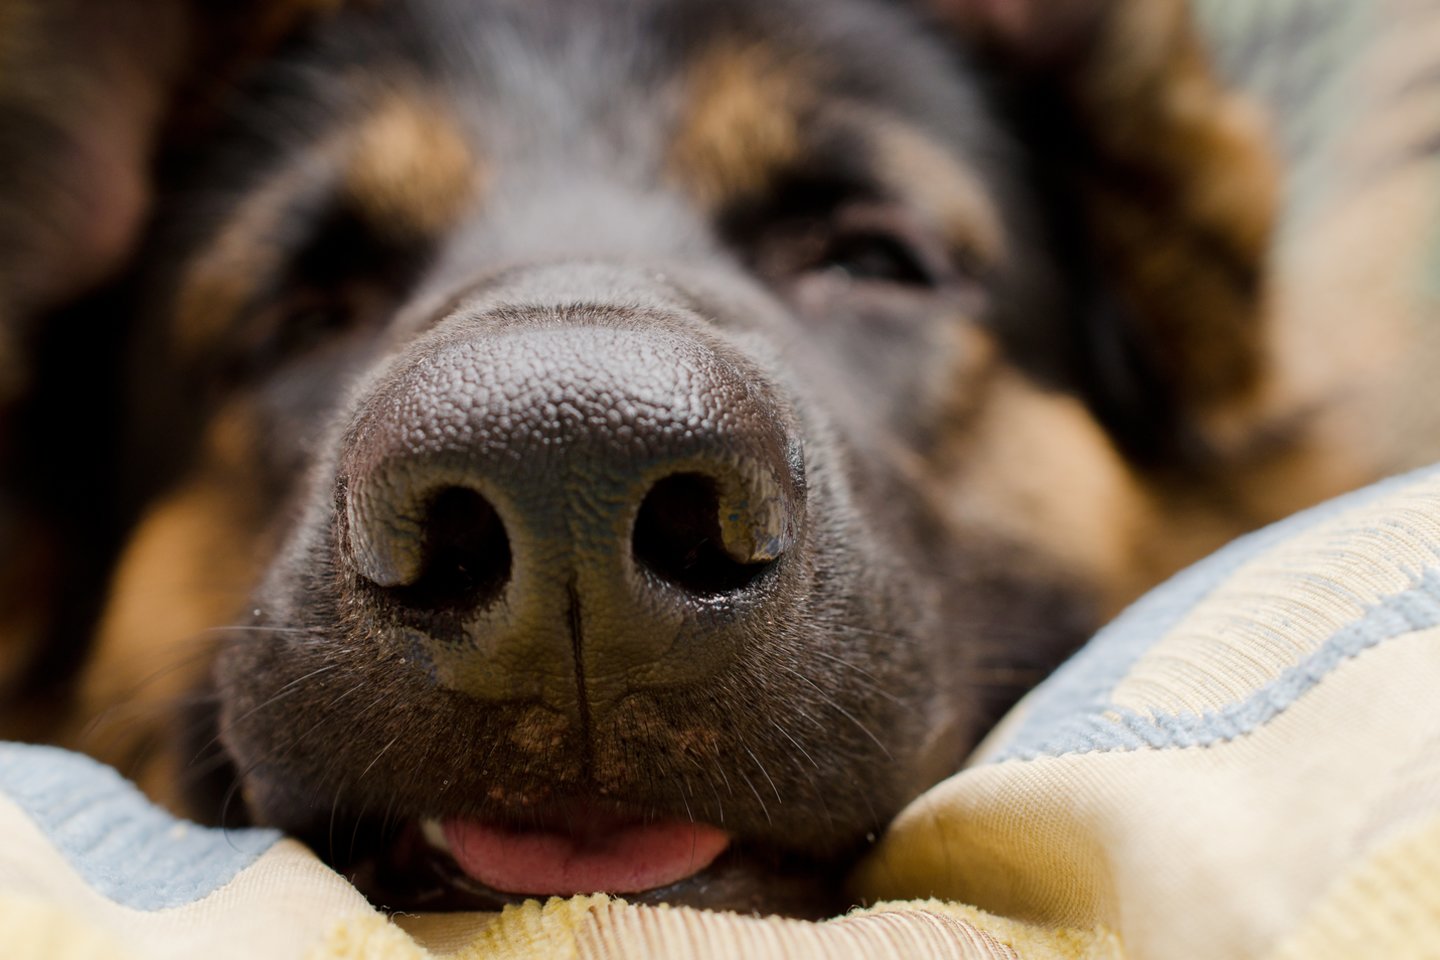  Kodėl šunų nosis būna šaltos – ir ar tai turi kažkokios praktinės naudos?<br> 123rf nuotr.